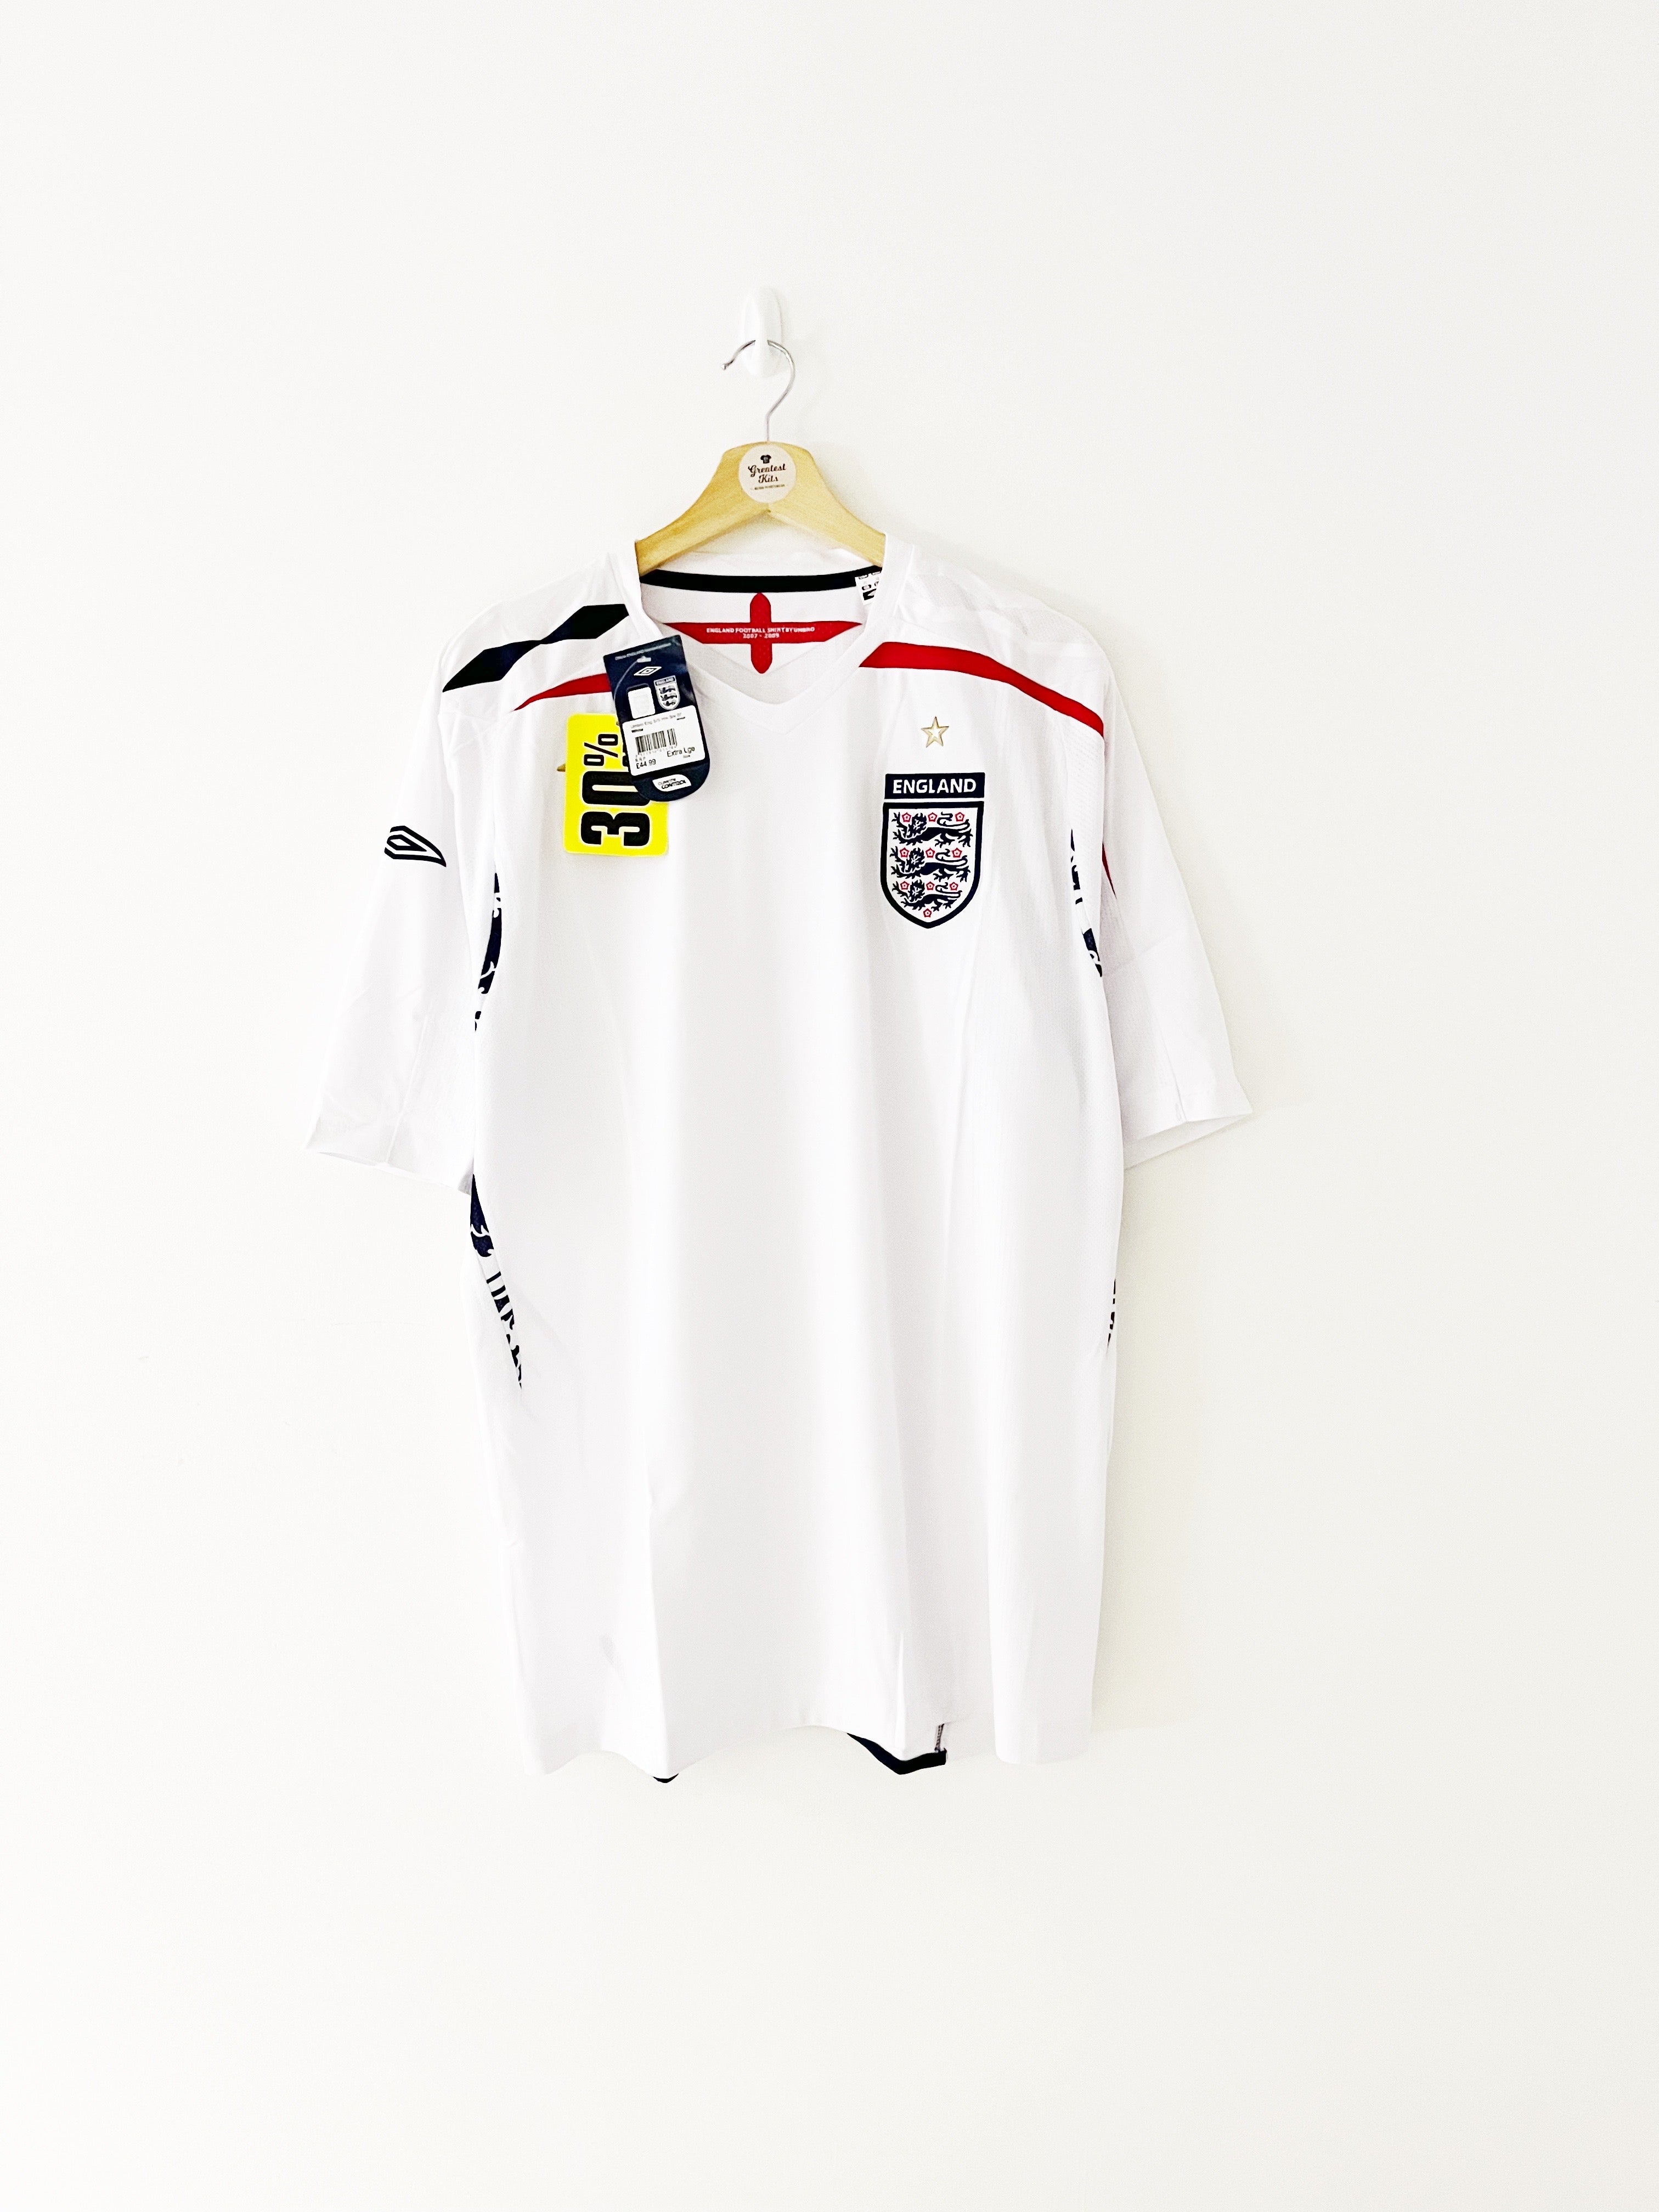 2007/09 England Home Shirt (XL) BNIB